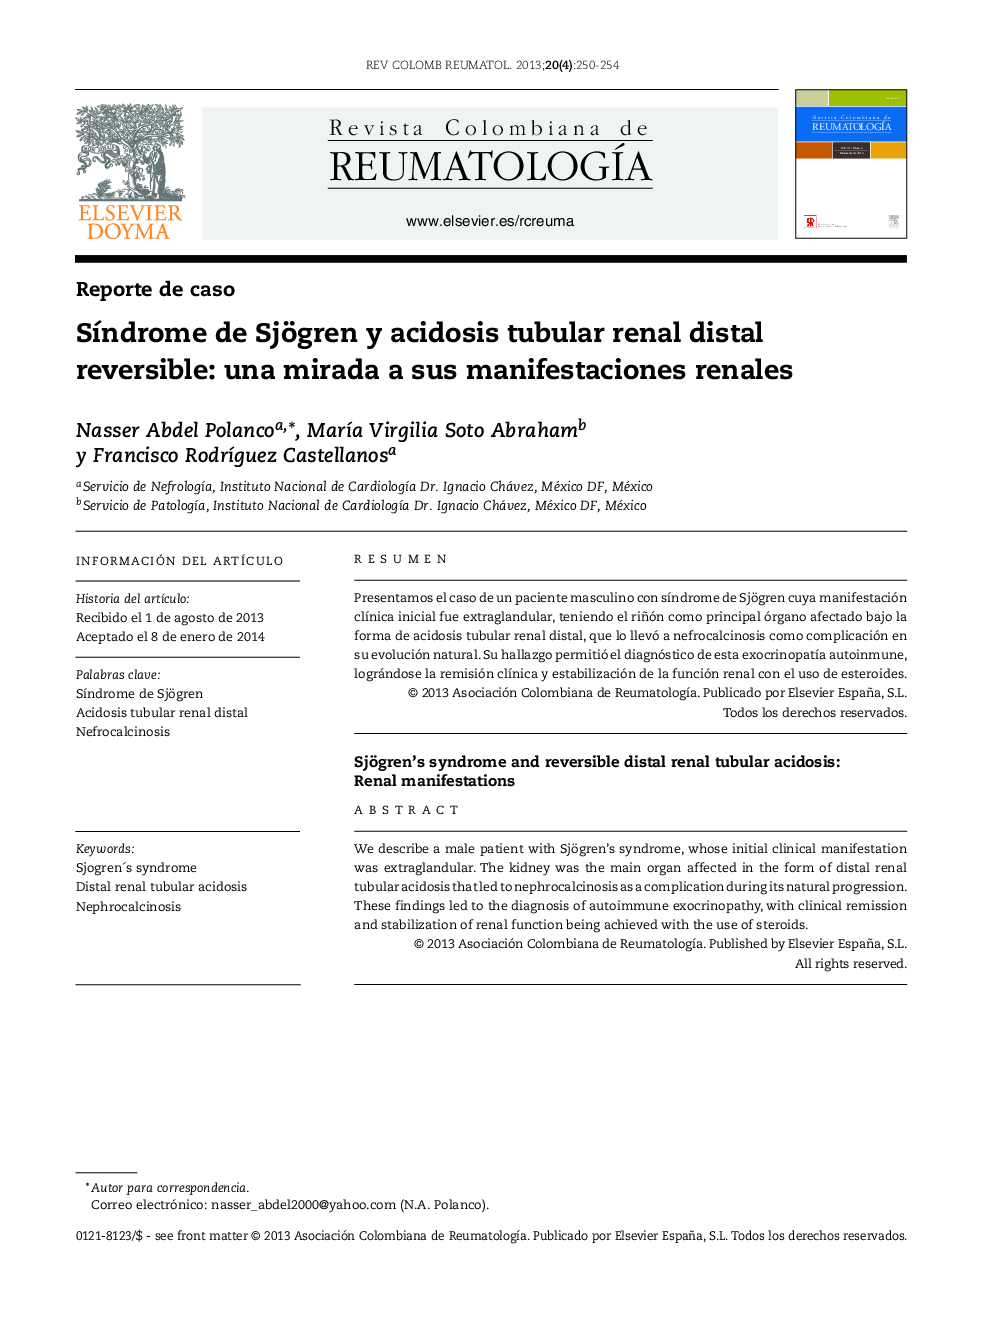 SÃ­ndrome de Sjögren y acidosis tubular renal distal reversible: una mirada a sus manifestaciones renales